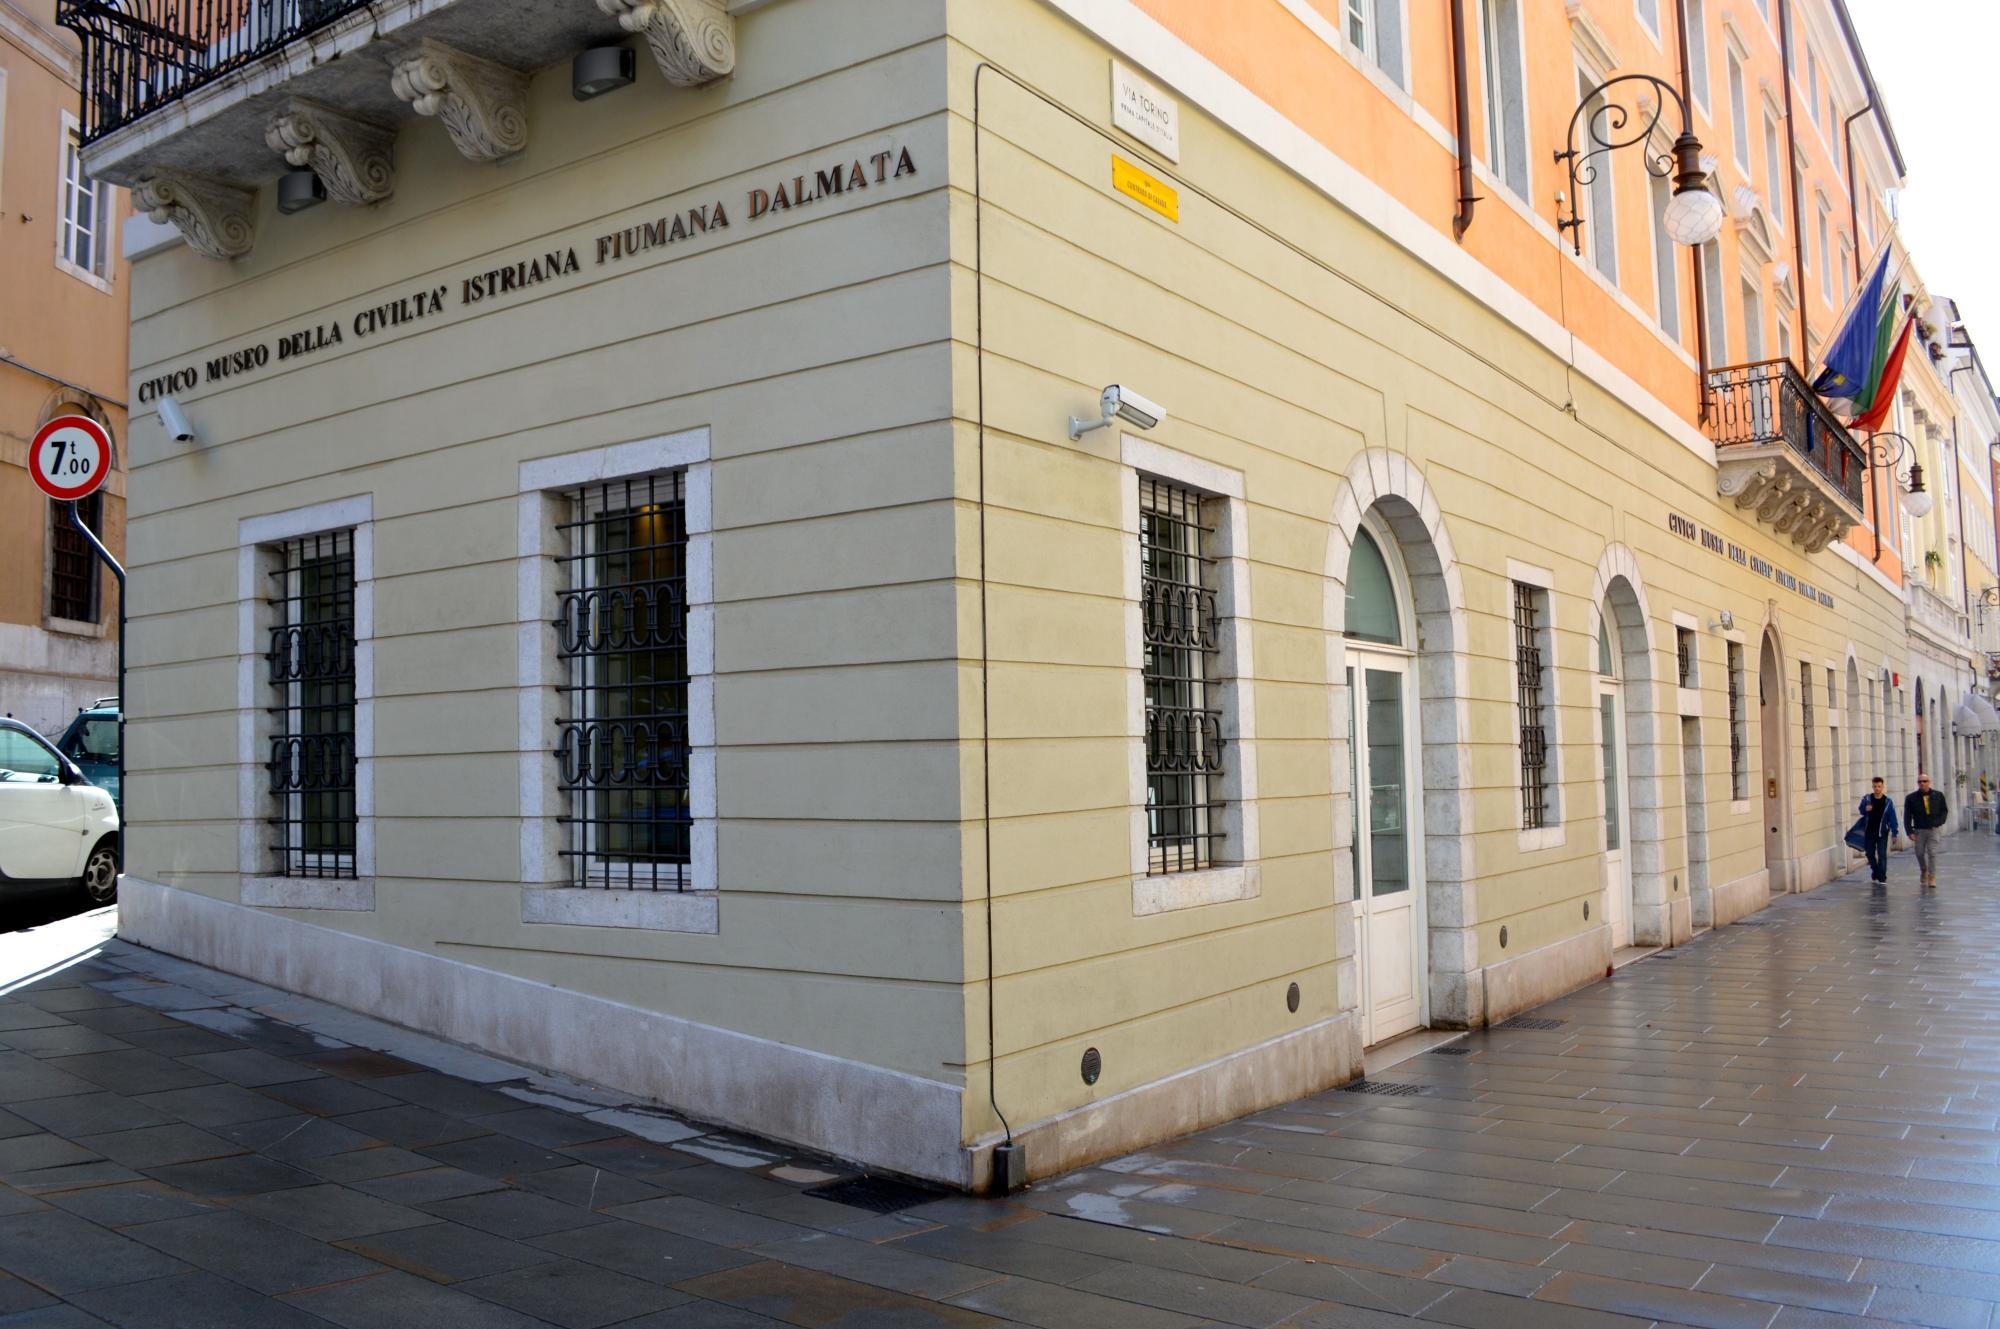 Civico Museo della Civiltà Istriana Fiumana e Dalmata